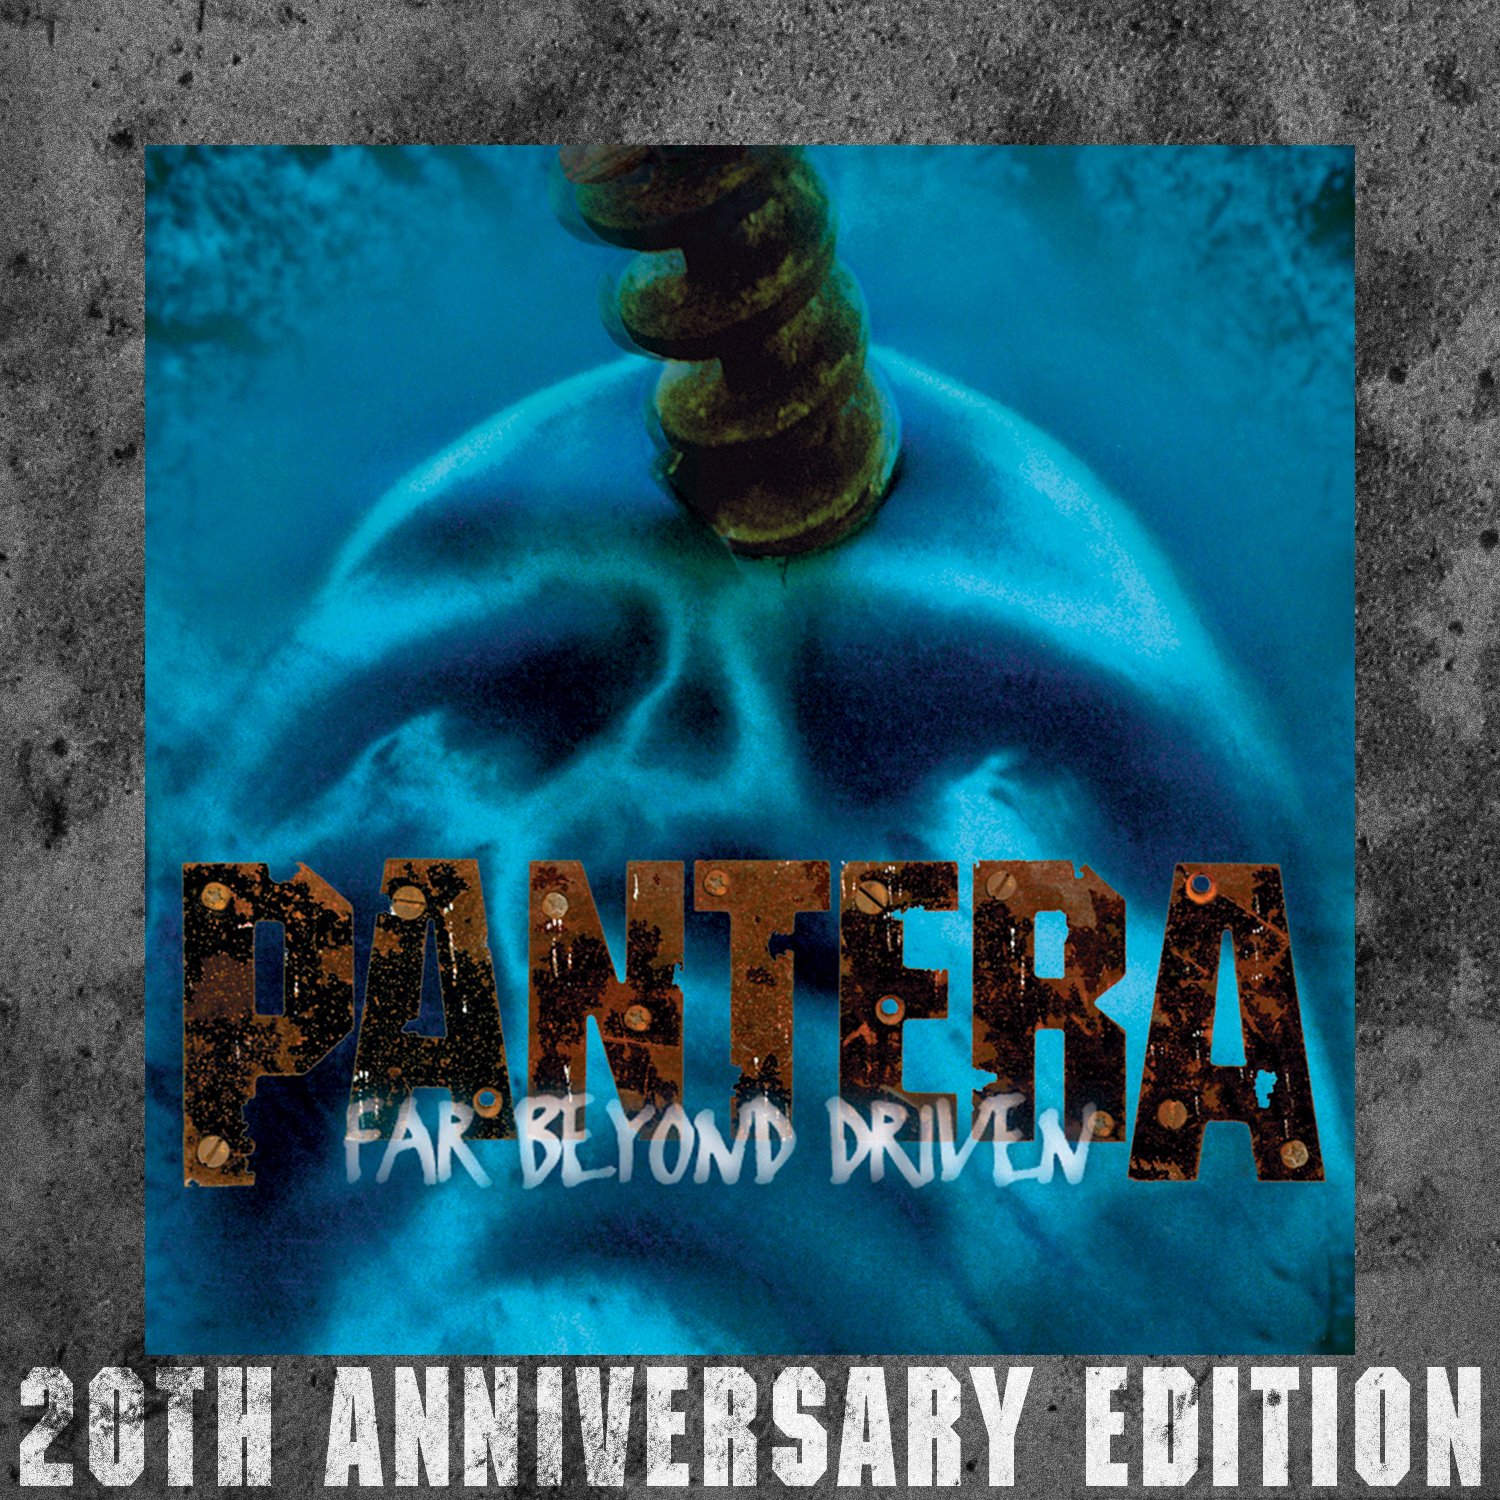 Far beyond driven. 1994 - Far Beyond Driven. Pantera far Beyond Driven 1994. Pantera. Far Beyond Driven. Pantera - far Beyond Driven 20th Anniversary Edition.